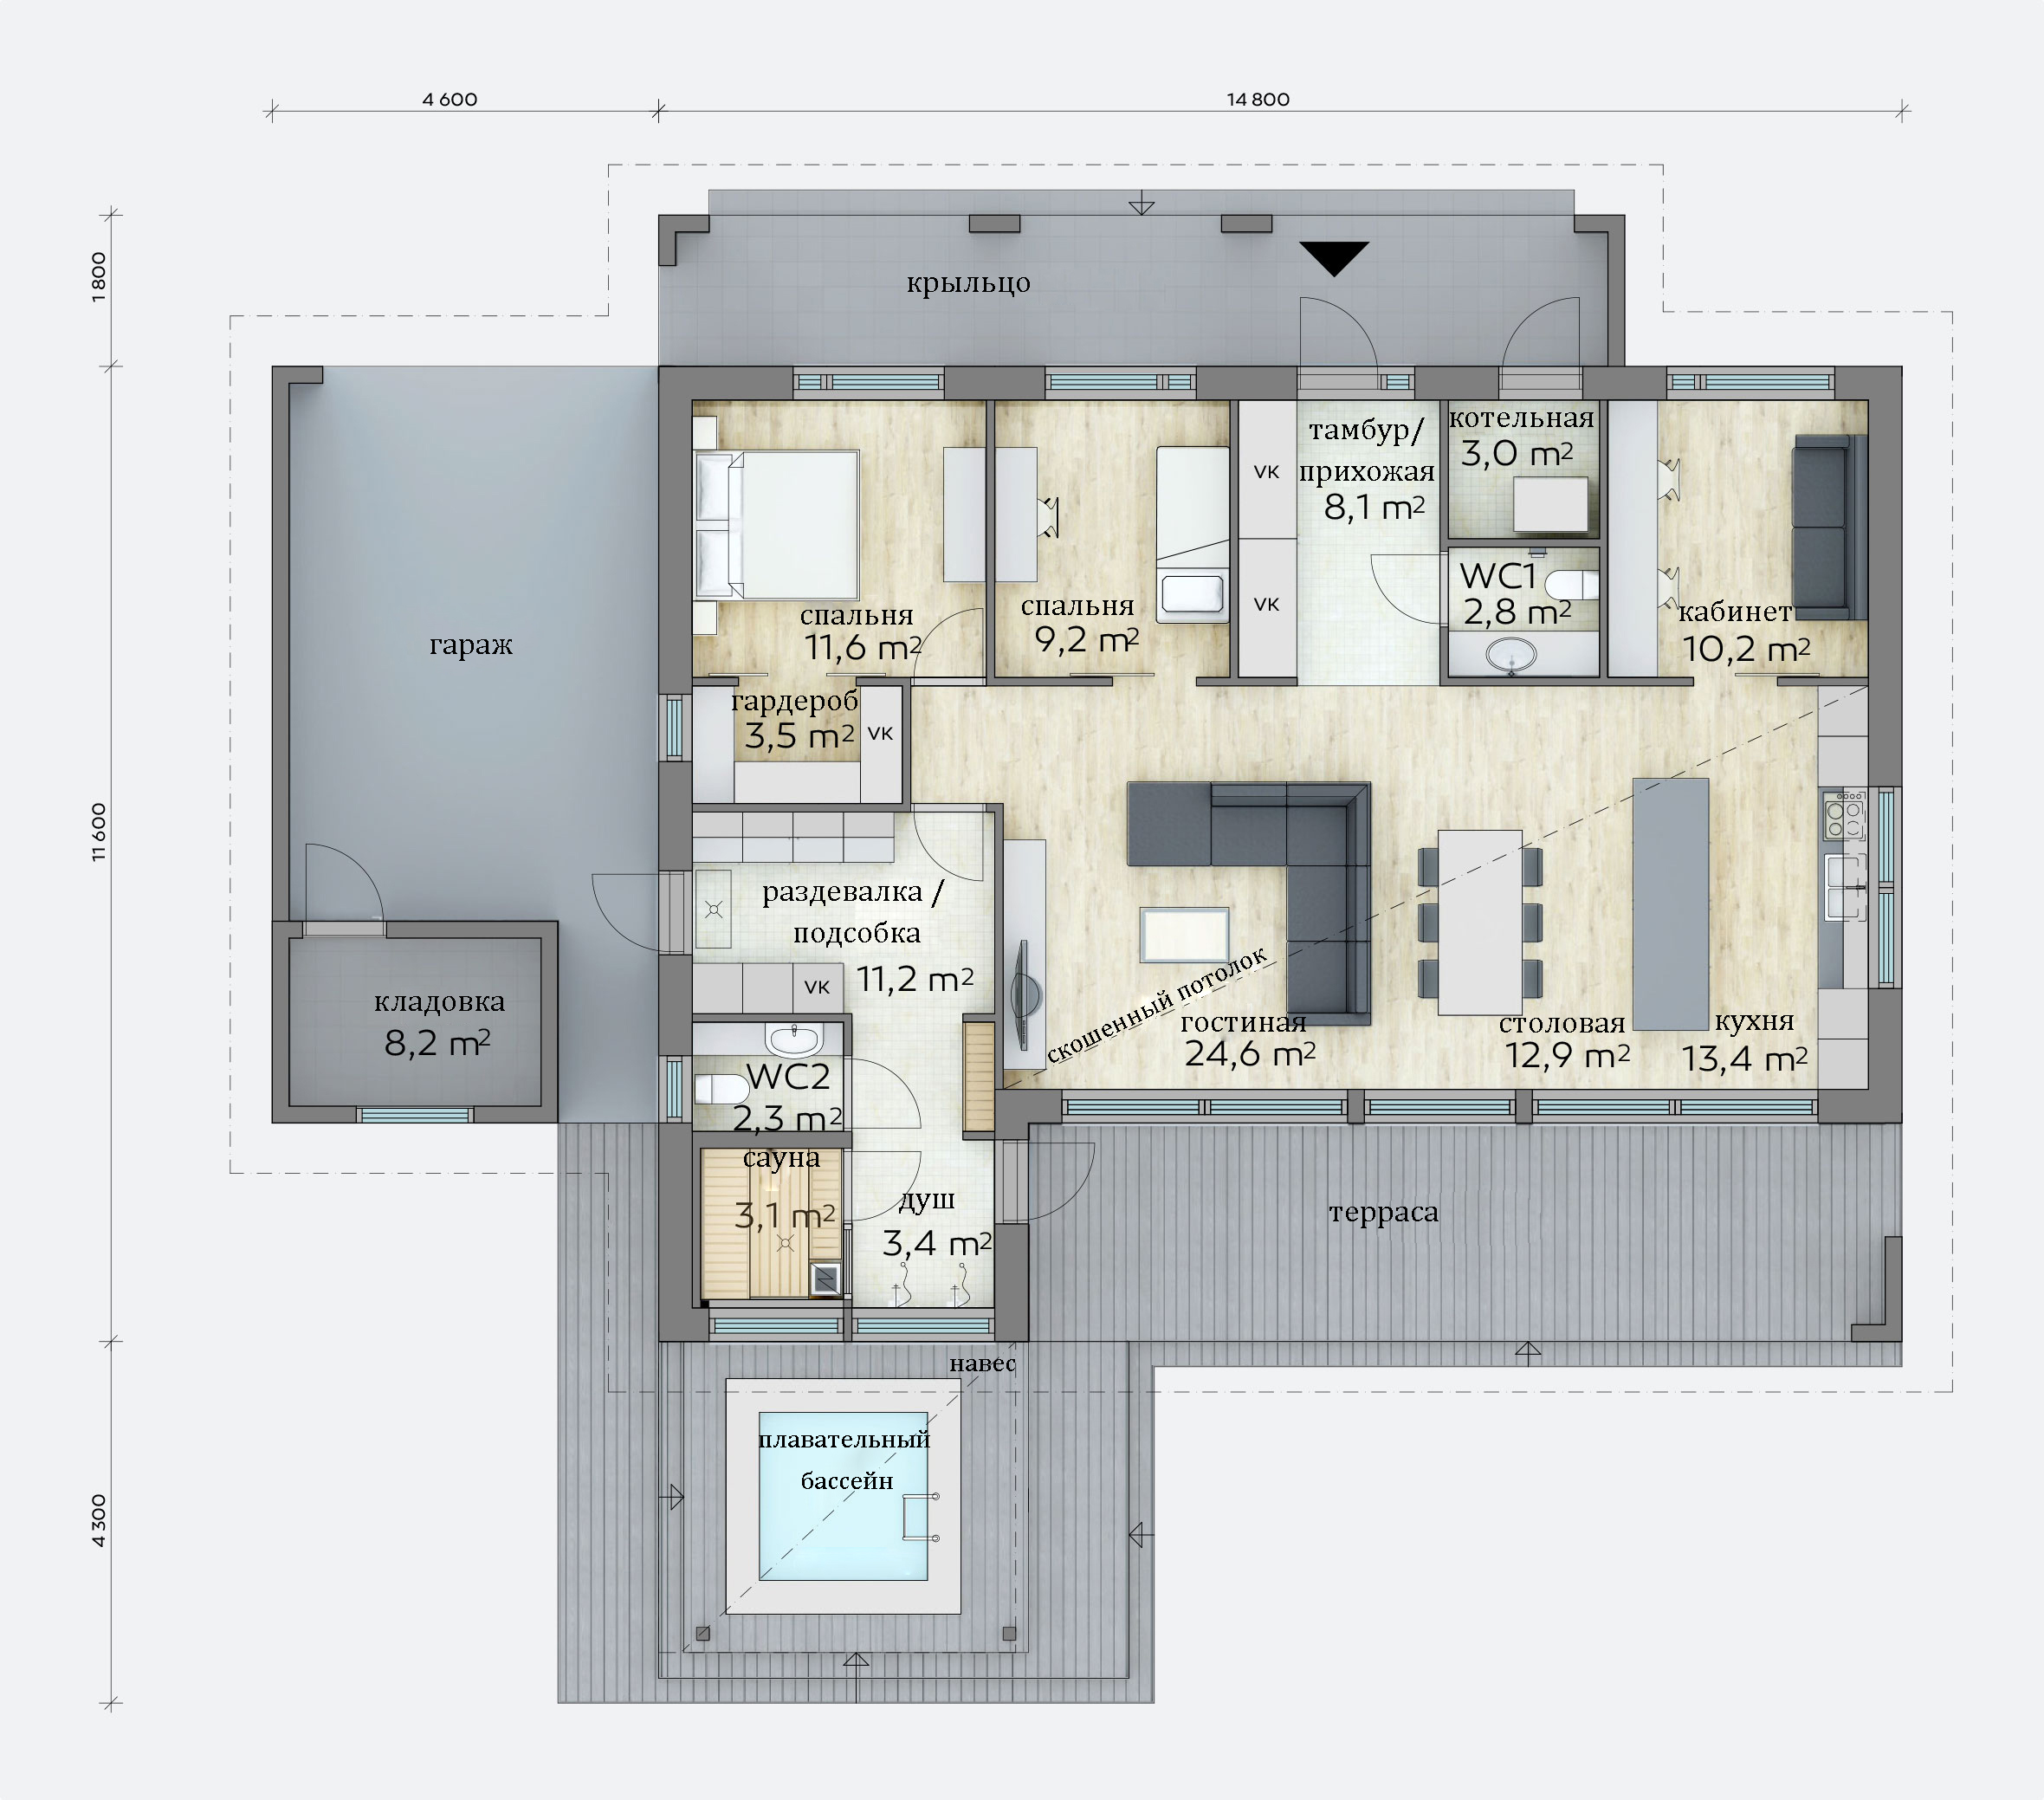 Пример плана дома с квадартными комнатами